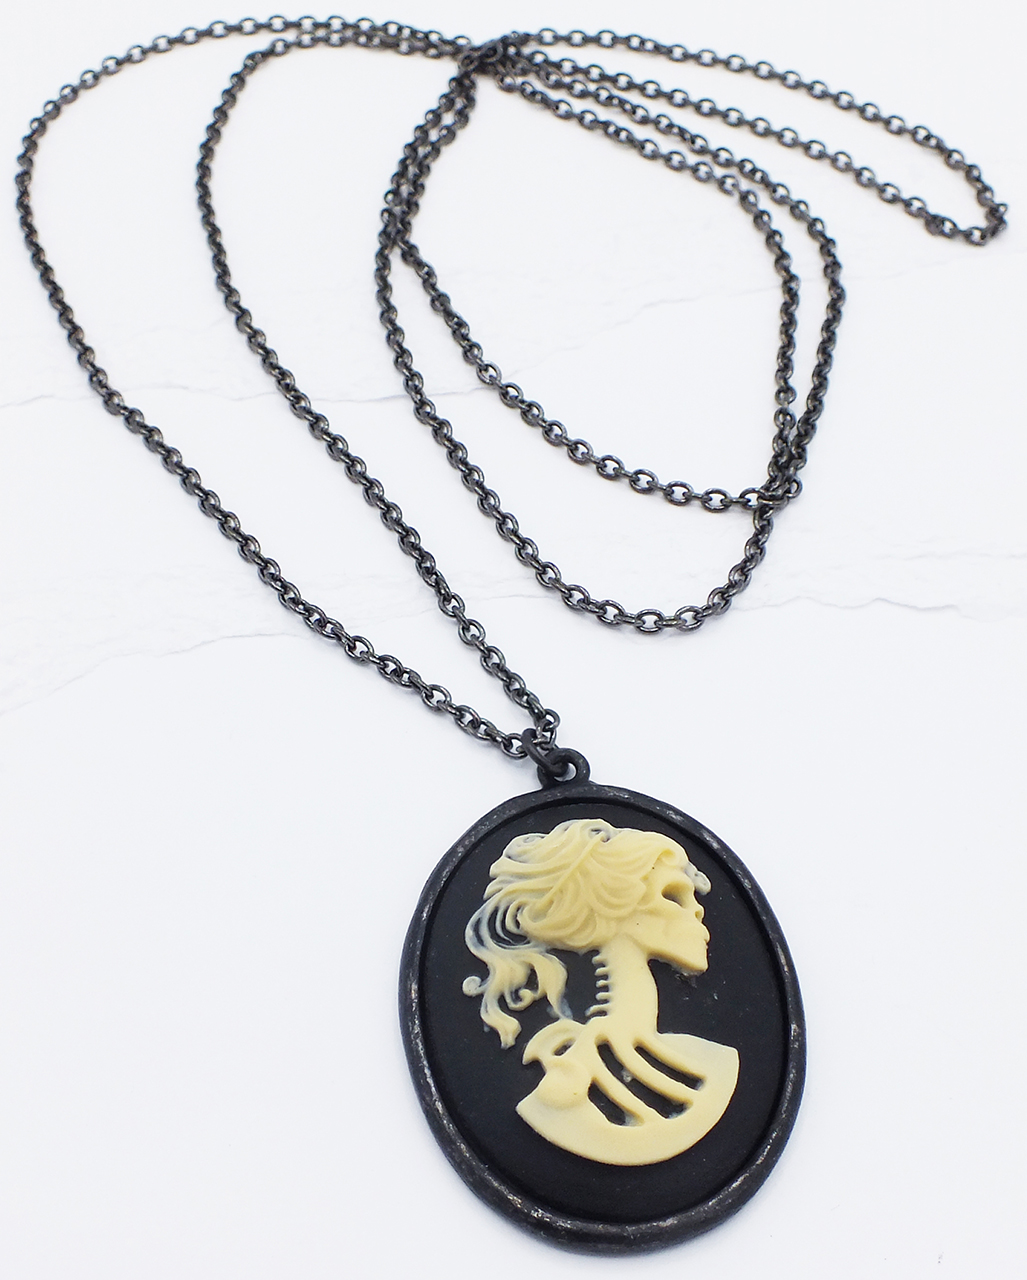 Kaufen Sie Gemshine Halskette - Gothic Totenkopf Totenschädel Anhänger zu  Großhandelspreisen